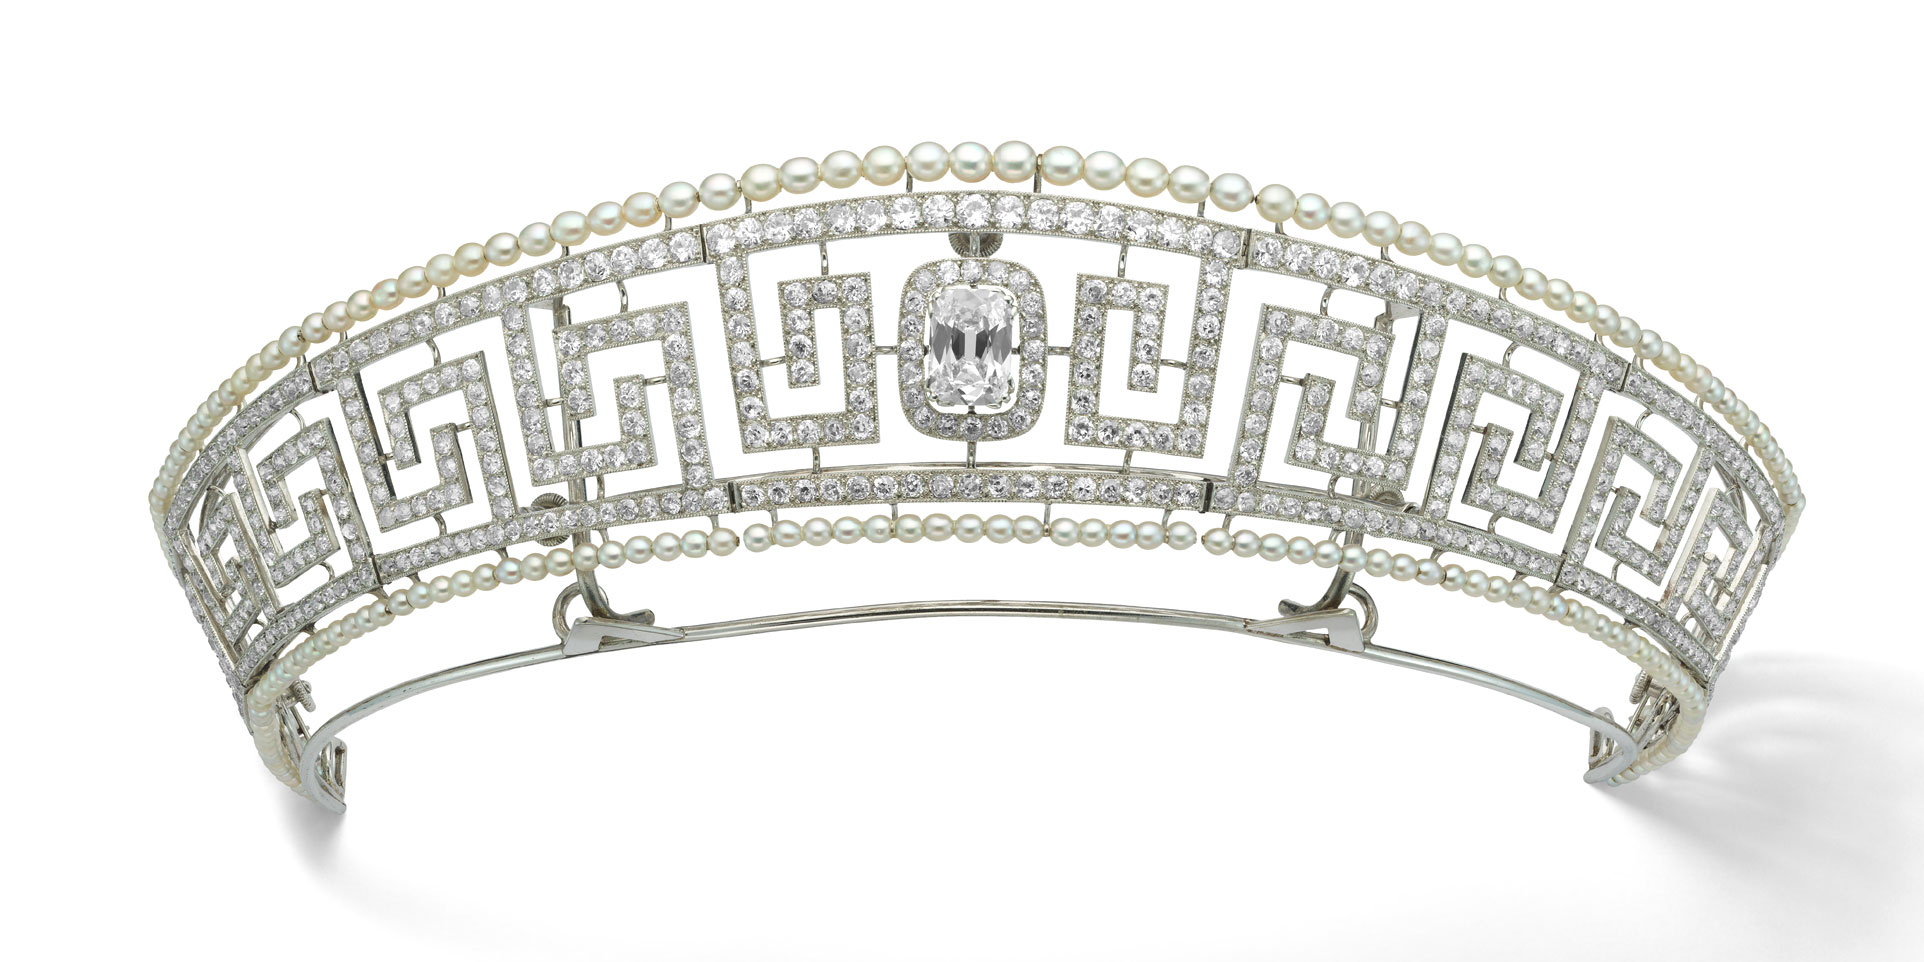 Diamond and pearl tiara saved from the Lusitania Cartier Paris 1909